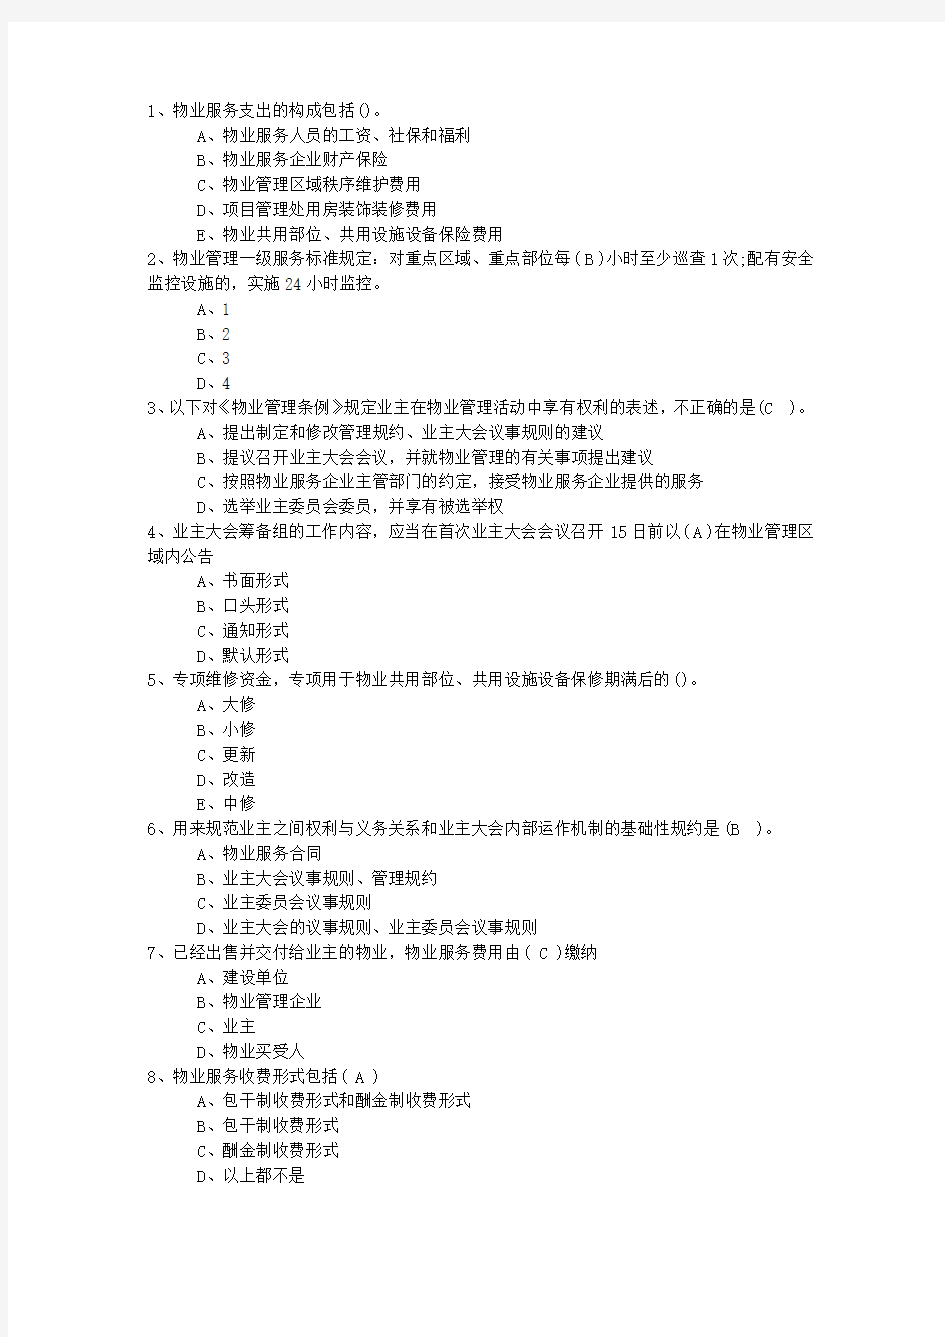 2015年湖南省物业管理师考试备考六大记忆法最新考试试题库(完整版)